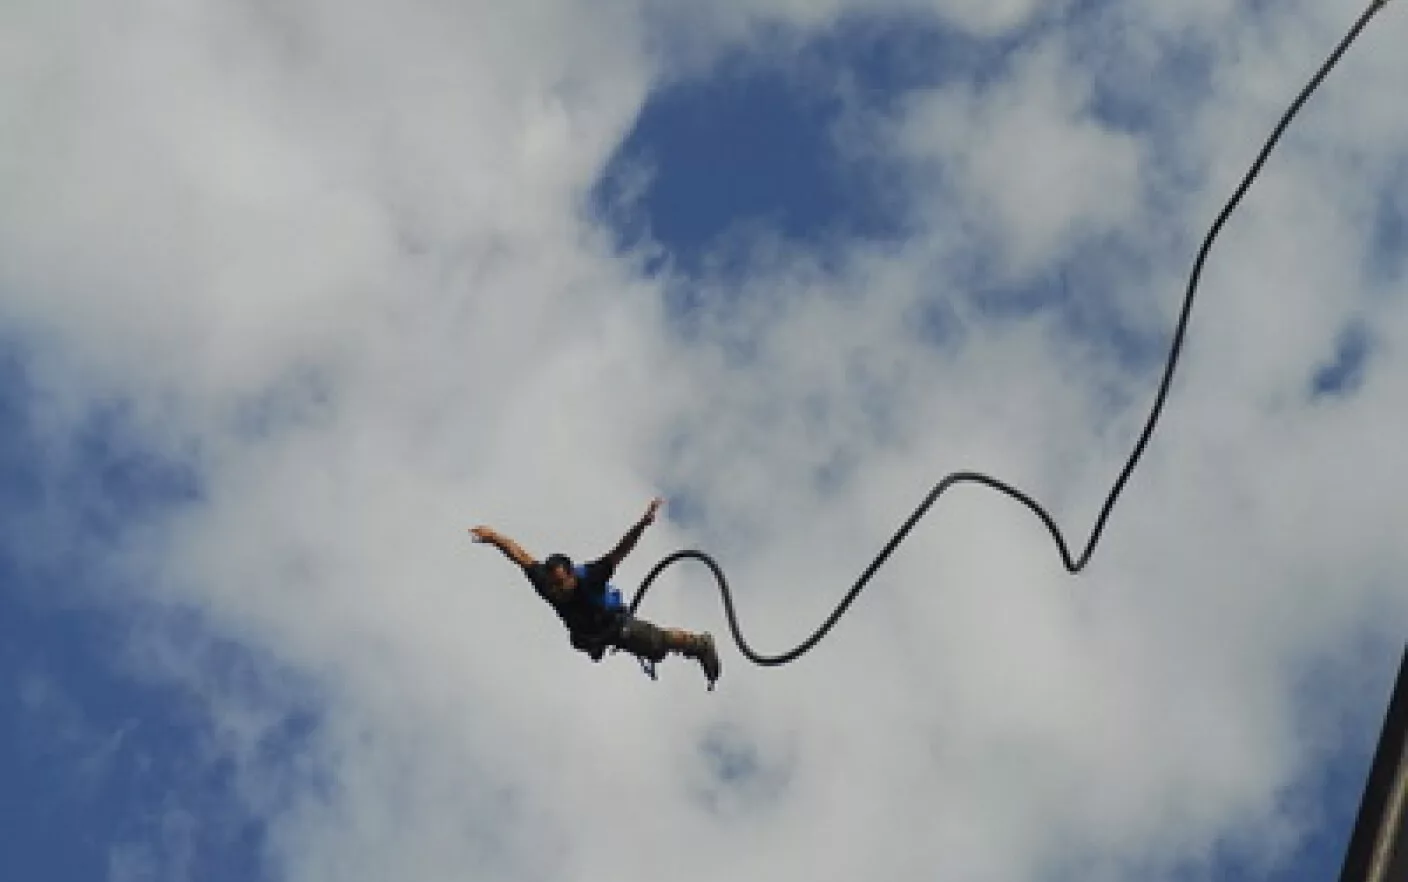 Un bărbat a supravieţuit miraculos după ce i s-a rupt frânghia de bungee jumping